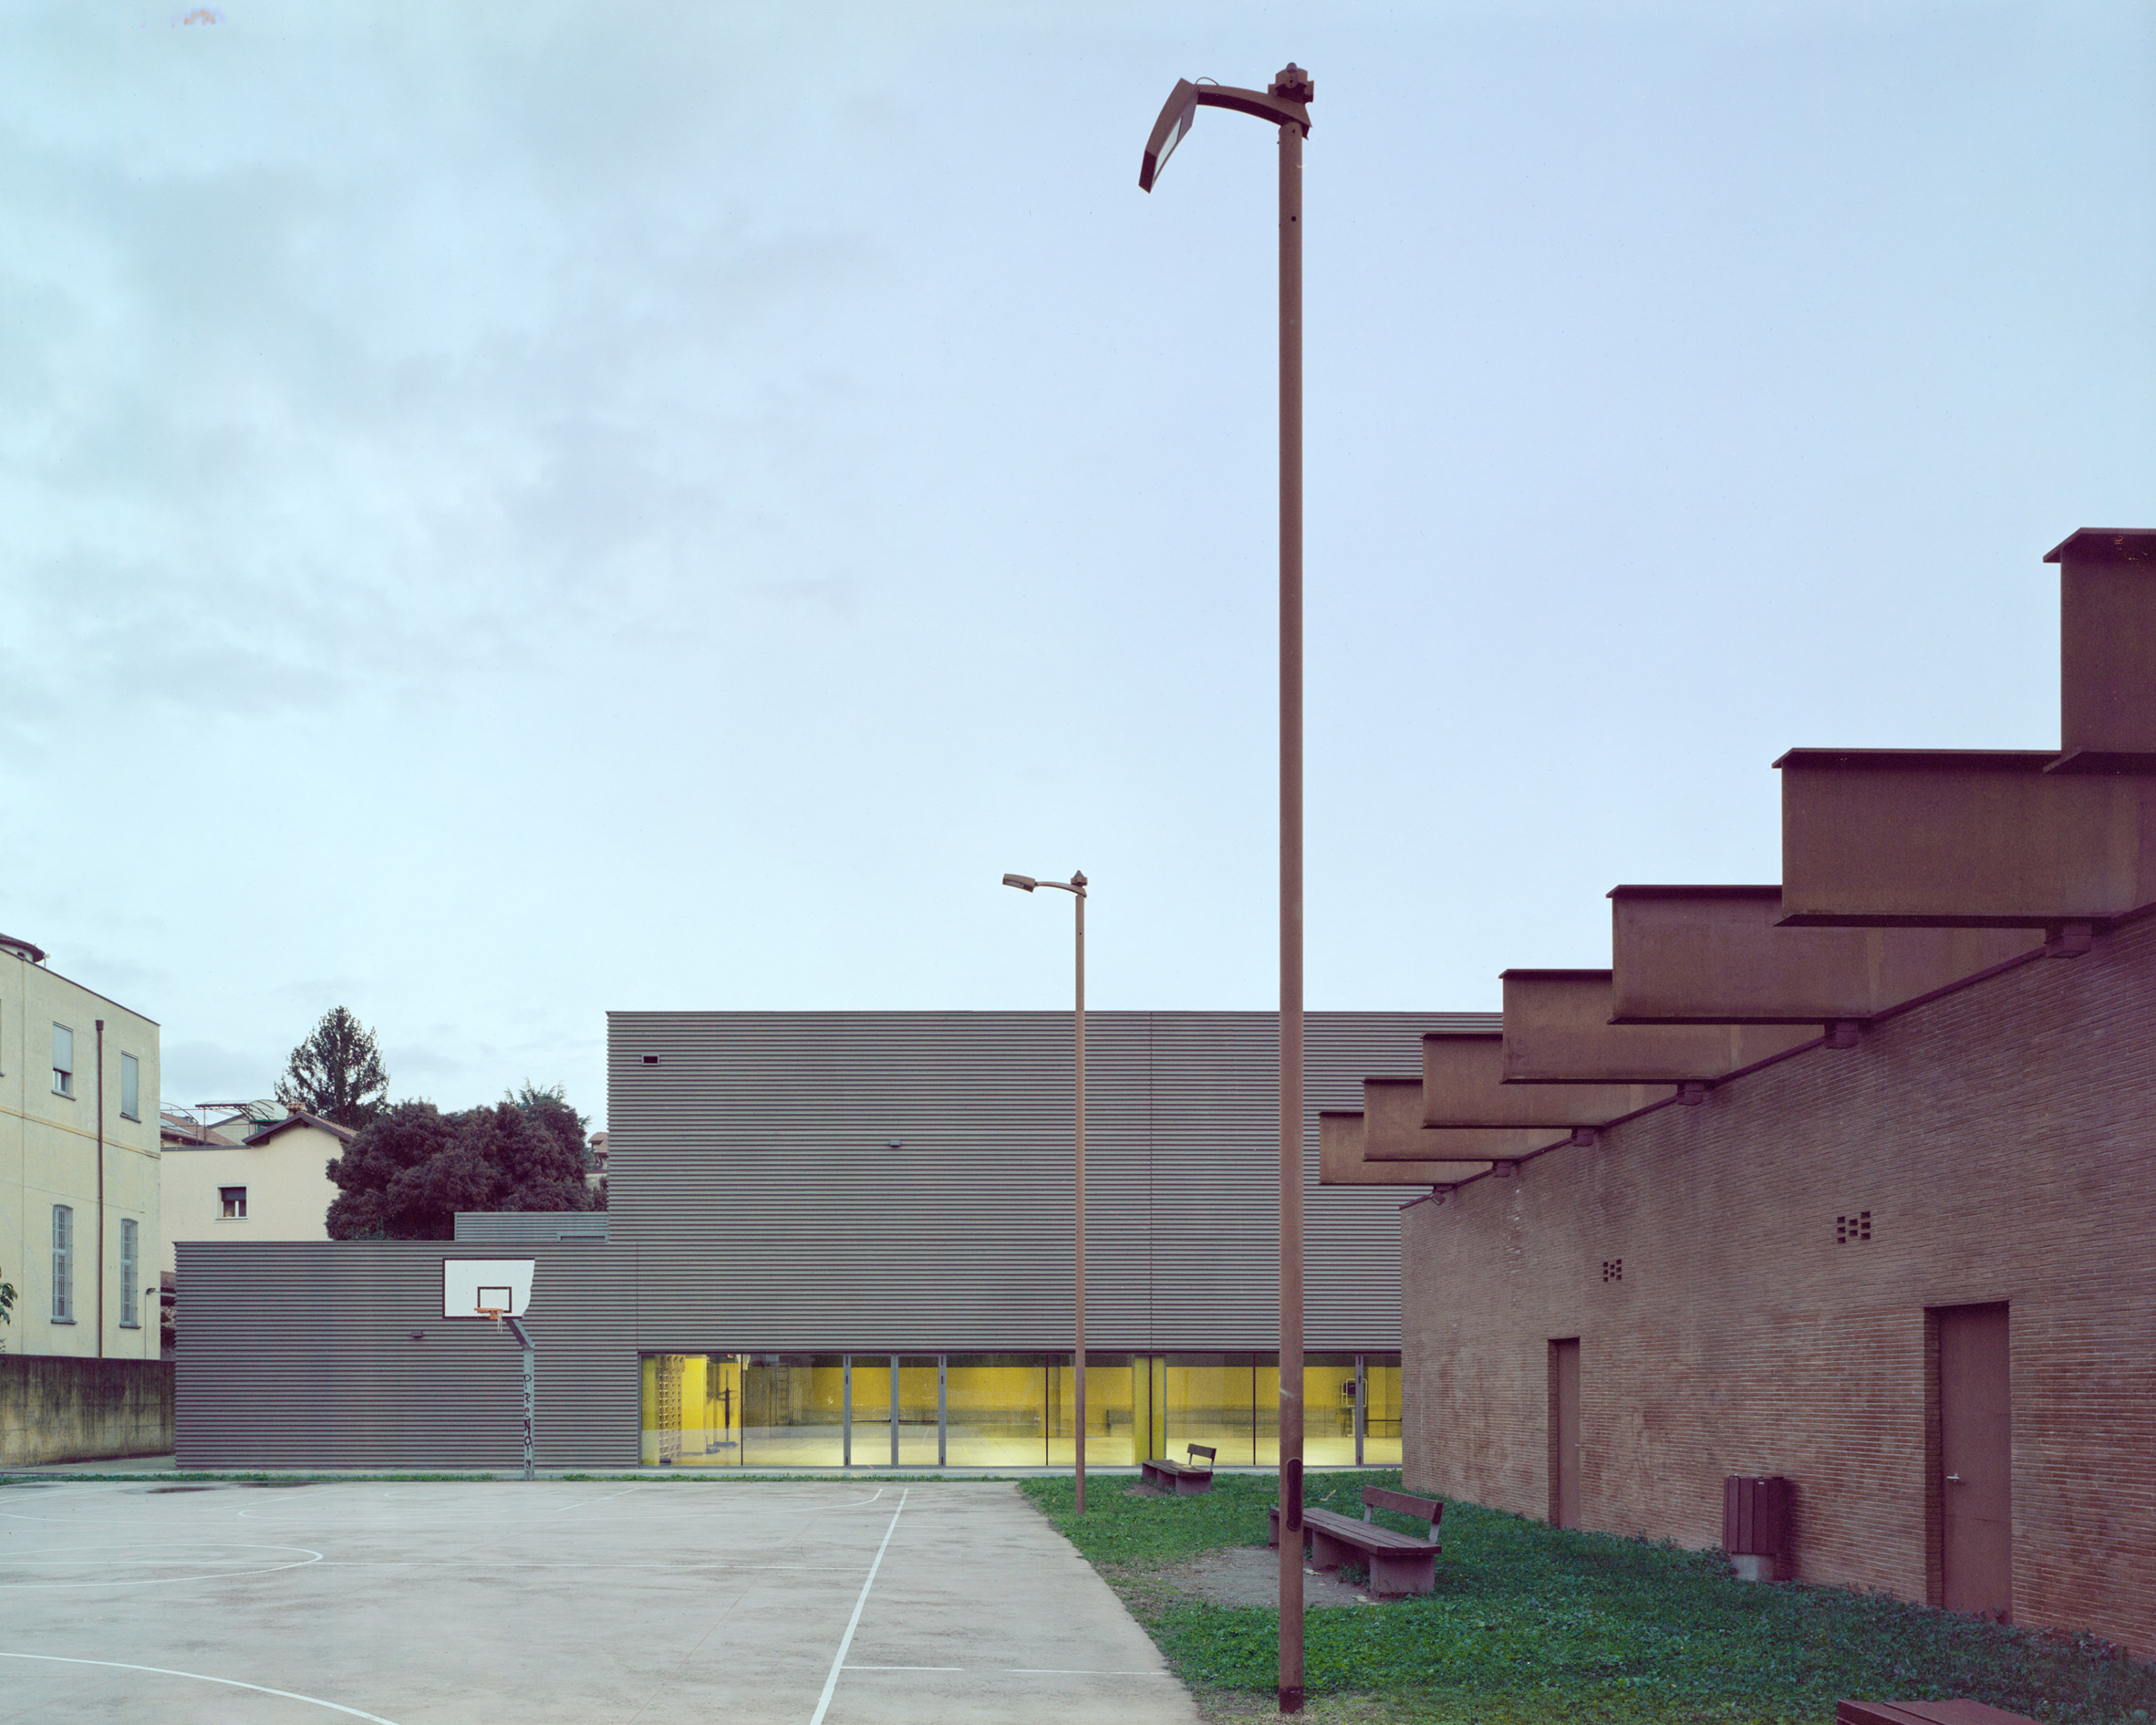 Concrete-clad gymnasium in Merate